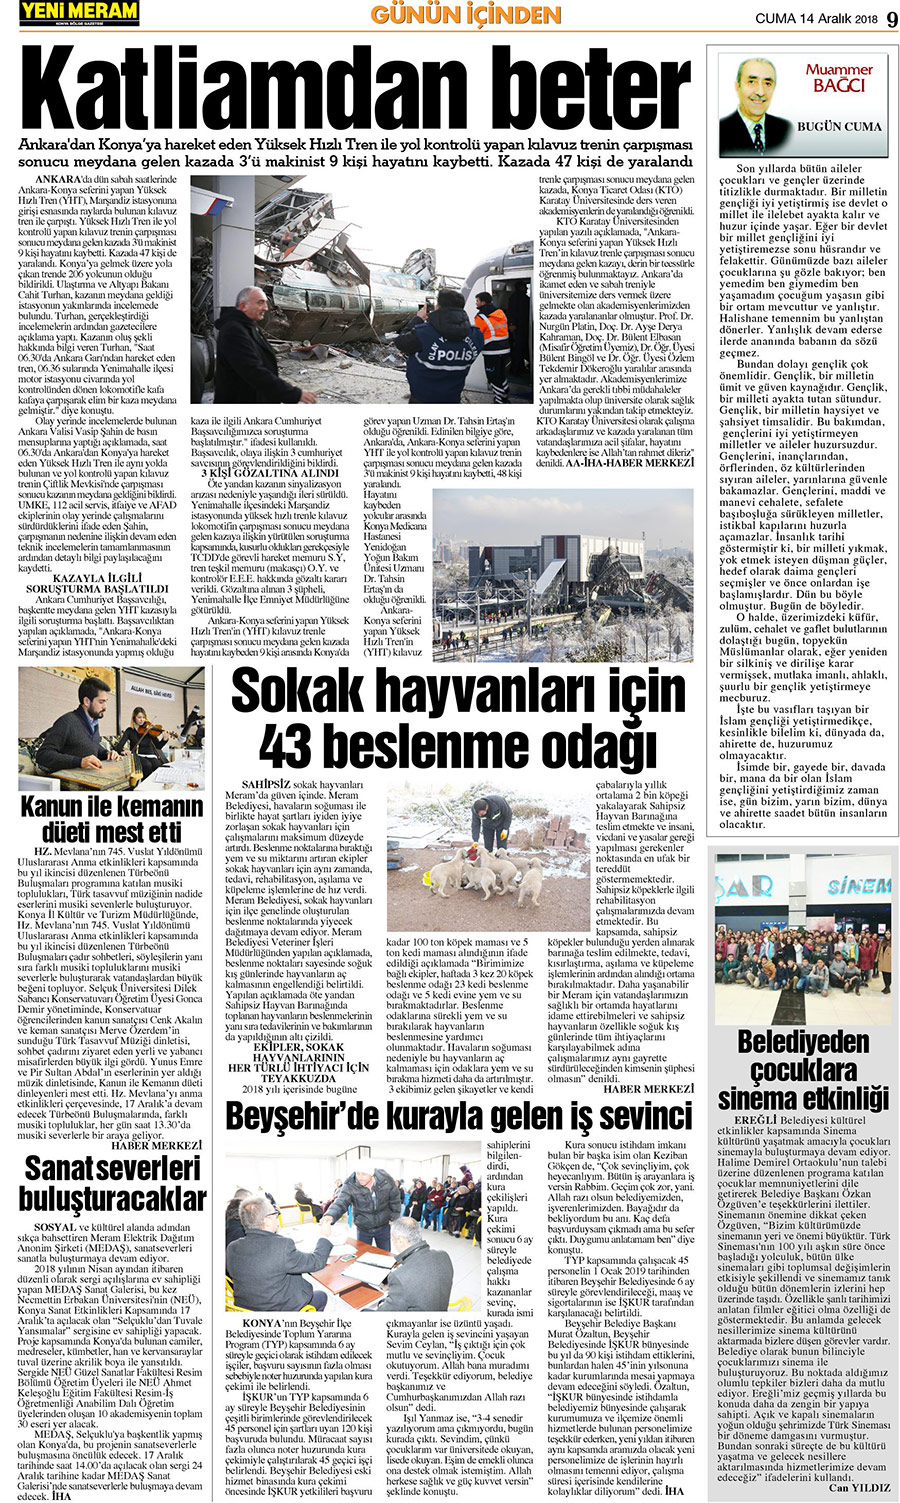 14 Aralık 2018 Yeni Meram Gazetesi